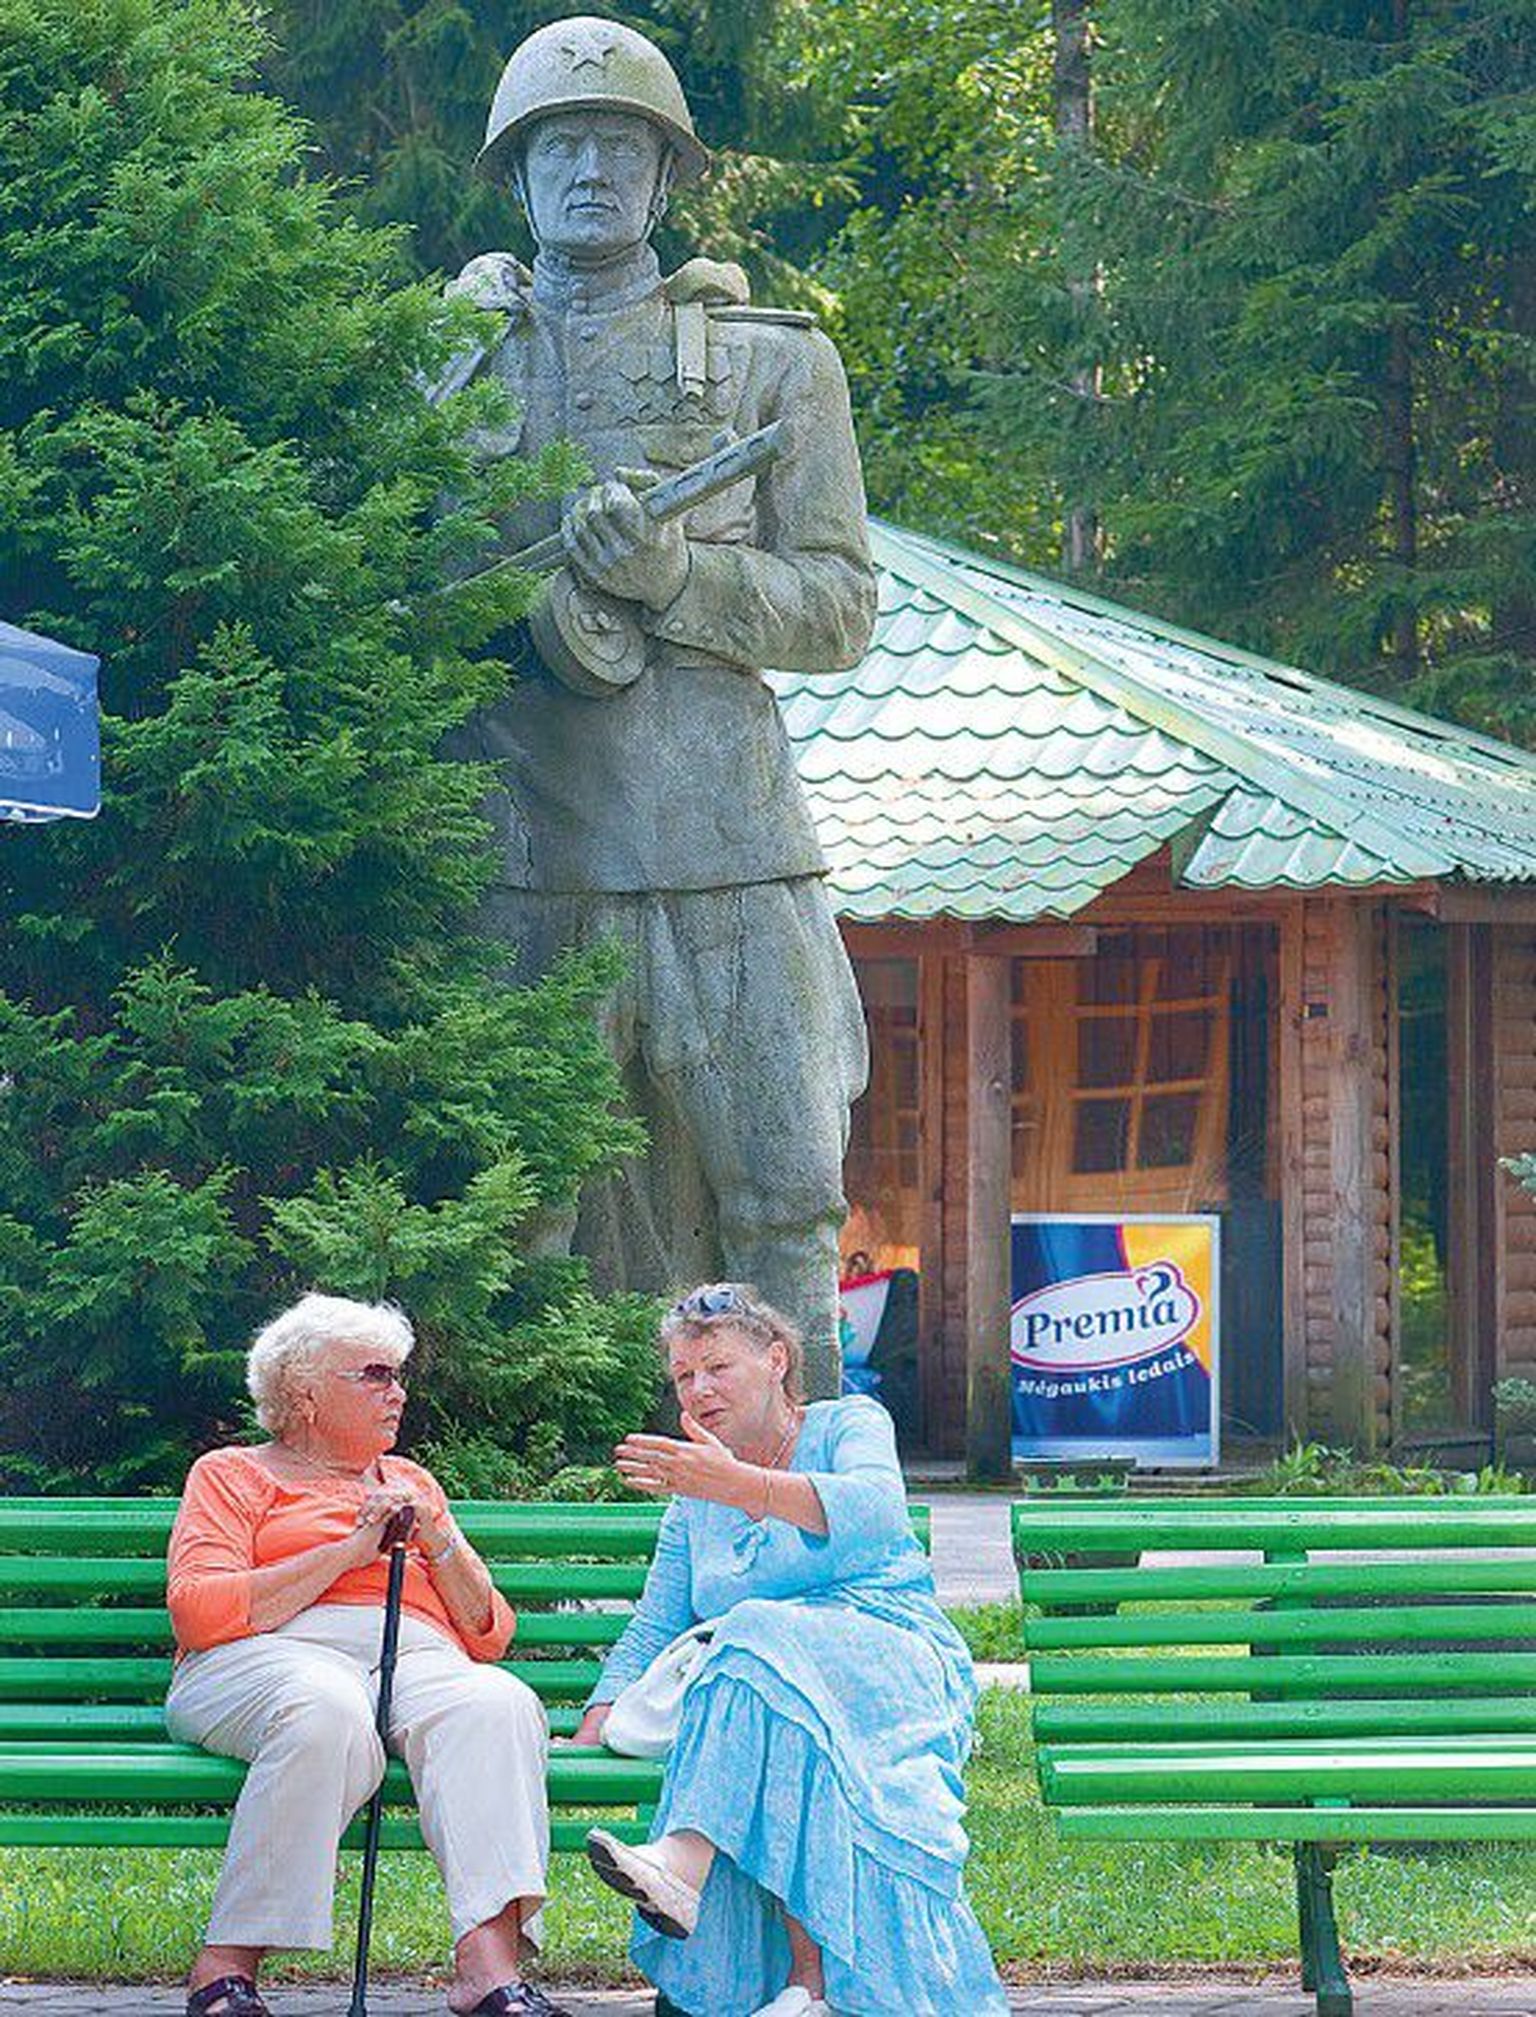 Grūtase pargis saavad eheda Nõukogude aja elamuse nii nooremad kui vanemad inimesed.